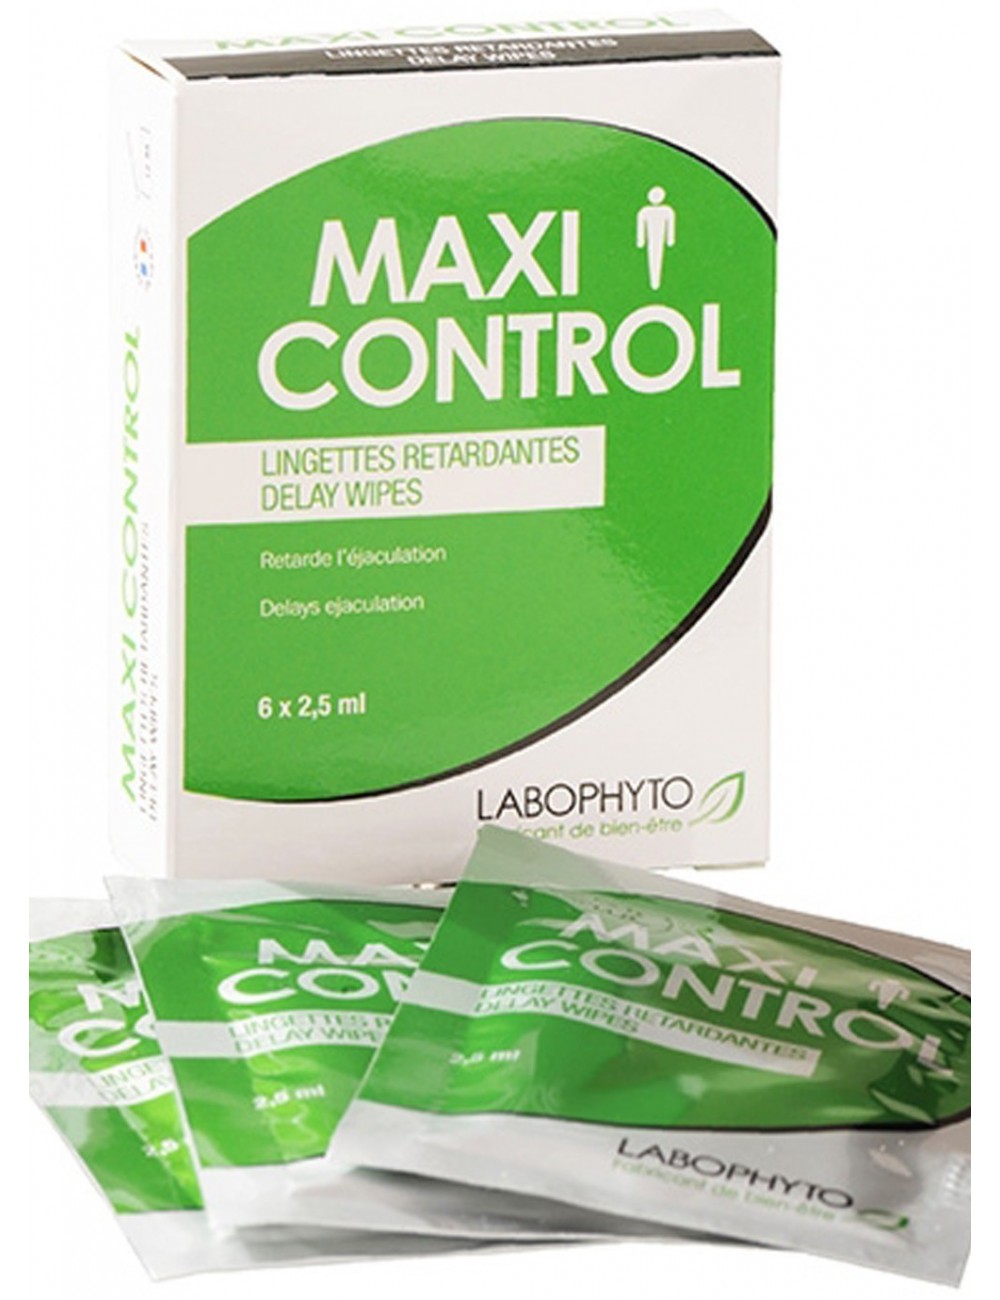 MaxiControl pour homme 6 lingettes retardantes - LAB-3456 - Plaisirs Intimes - Labophyto